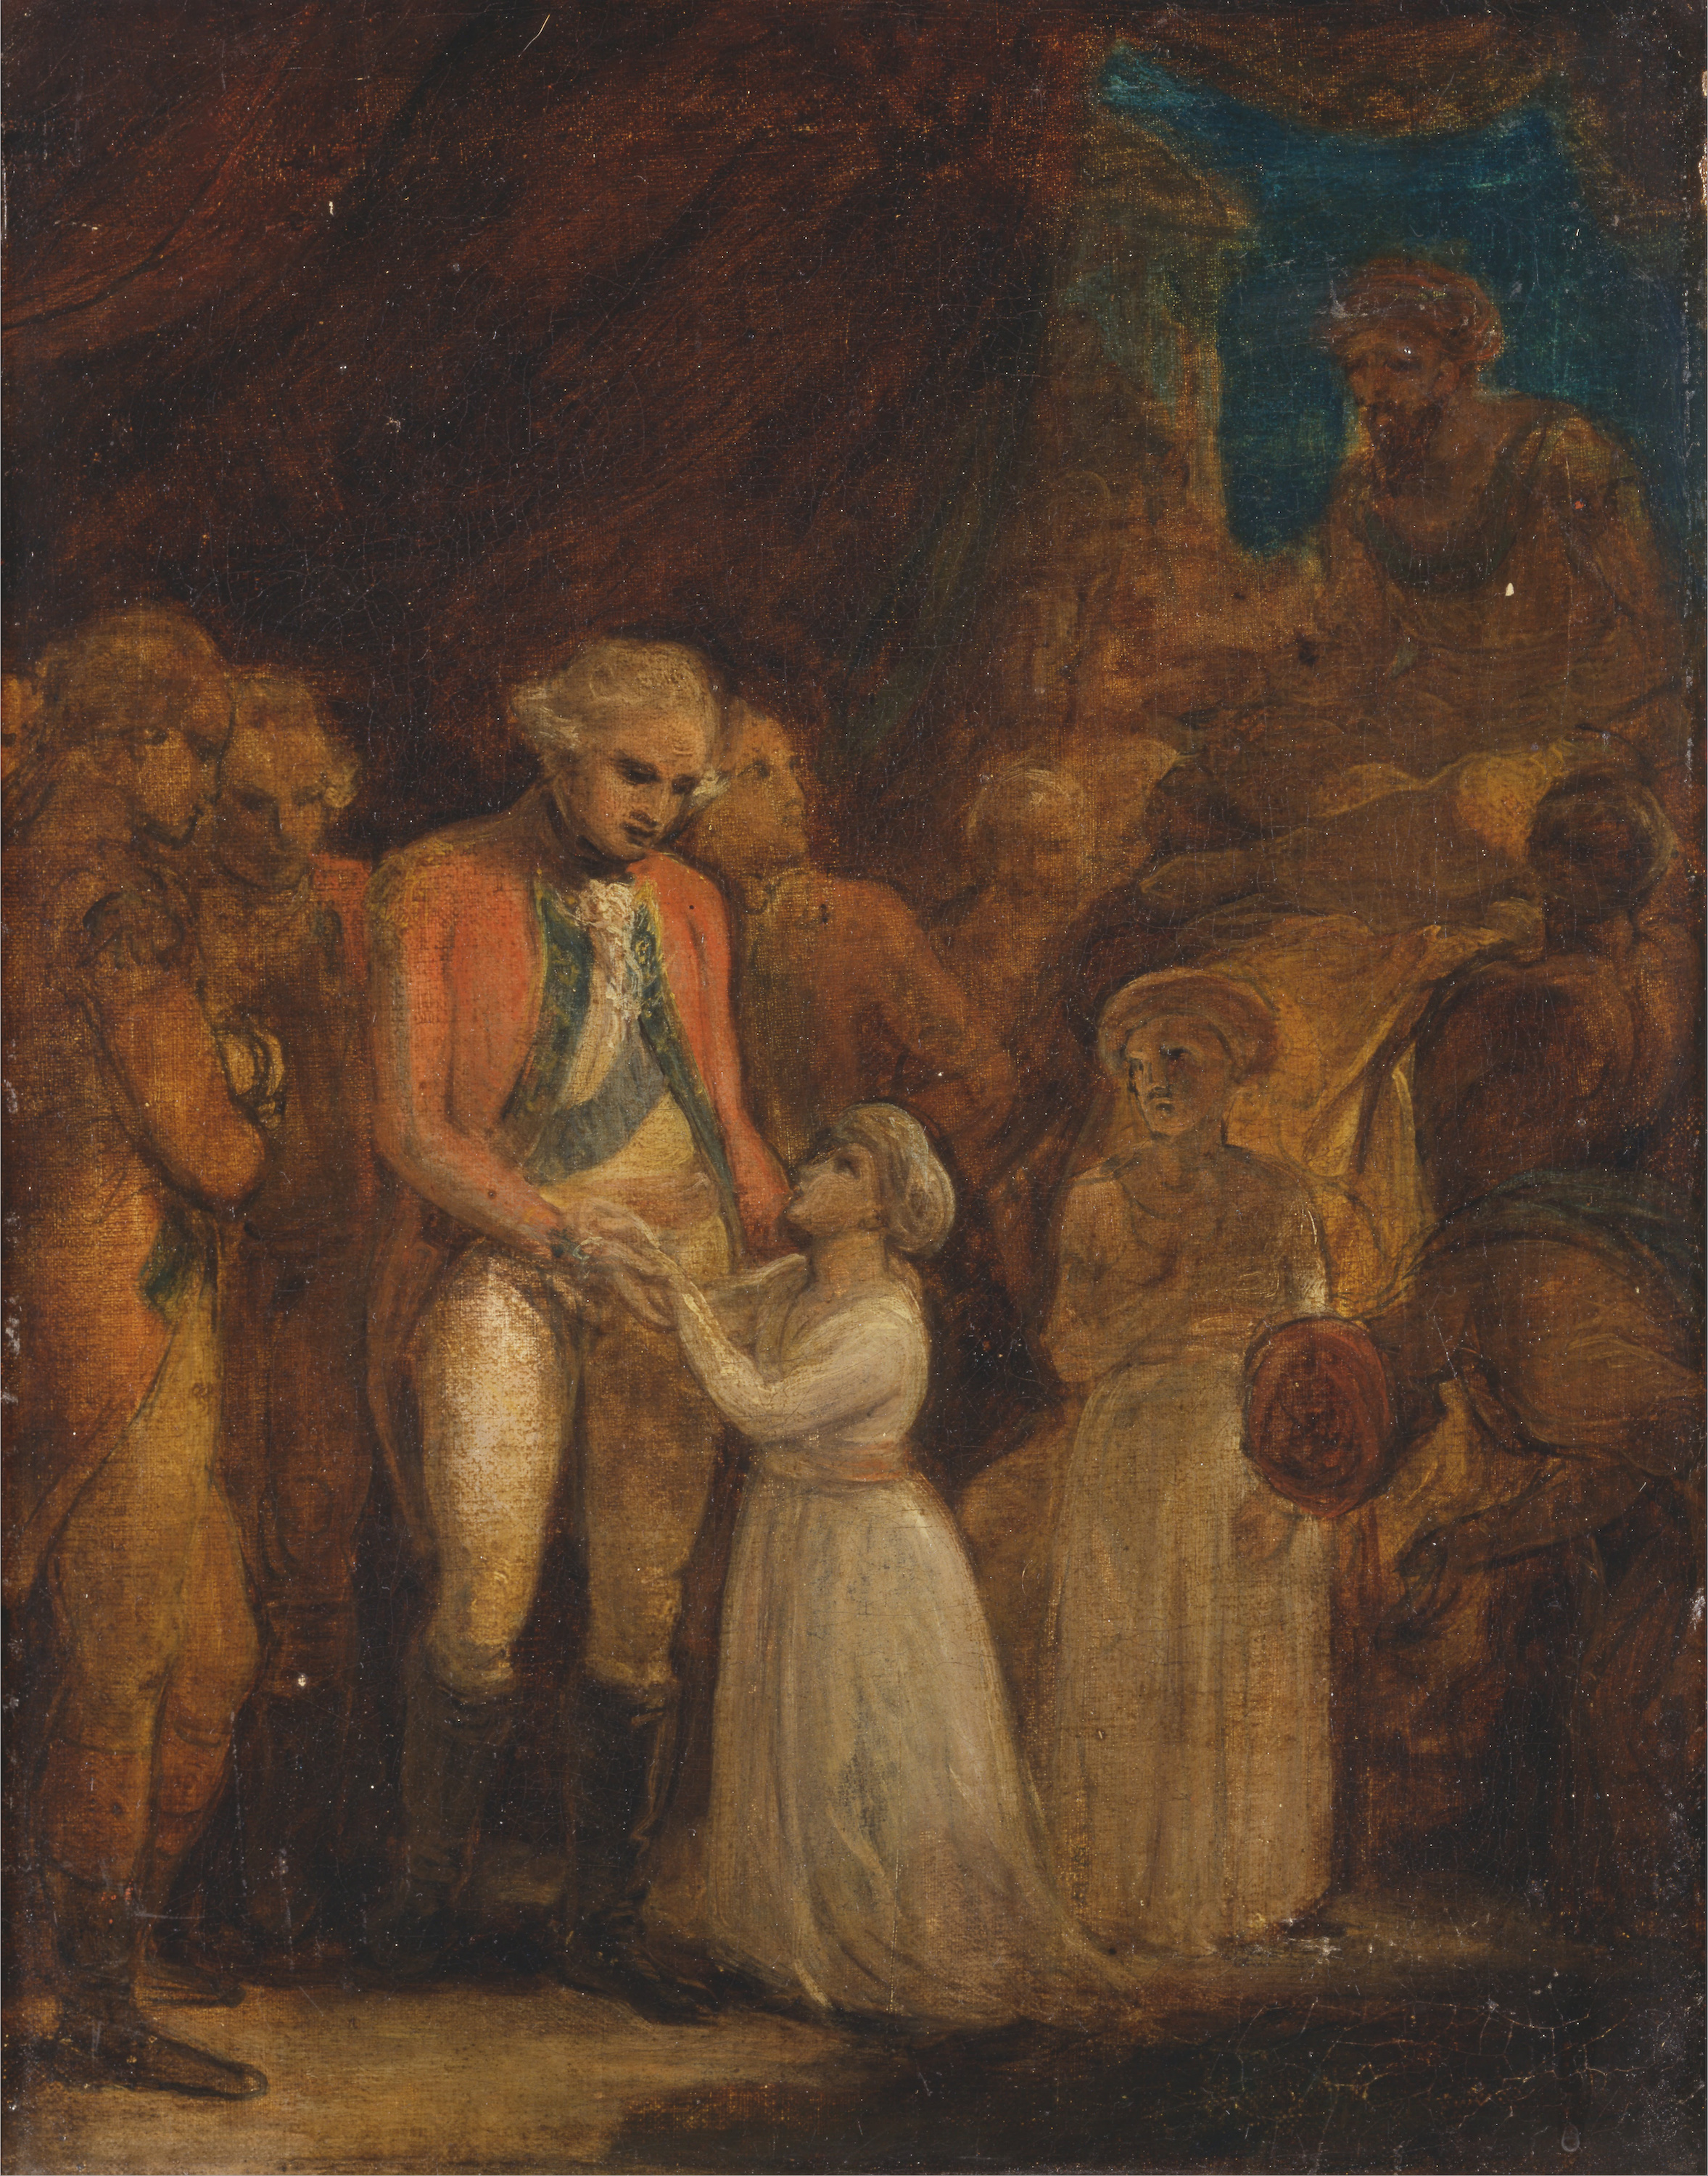 تسليم ابنيّ تيبو ساحيب -سلطان مدينة ميسور- كرهائن للجنرال كورنواليس by Robert Smirke - 1792 - 451 x 356 سم 